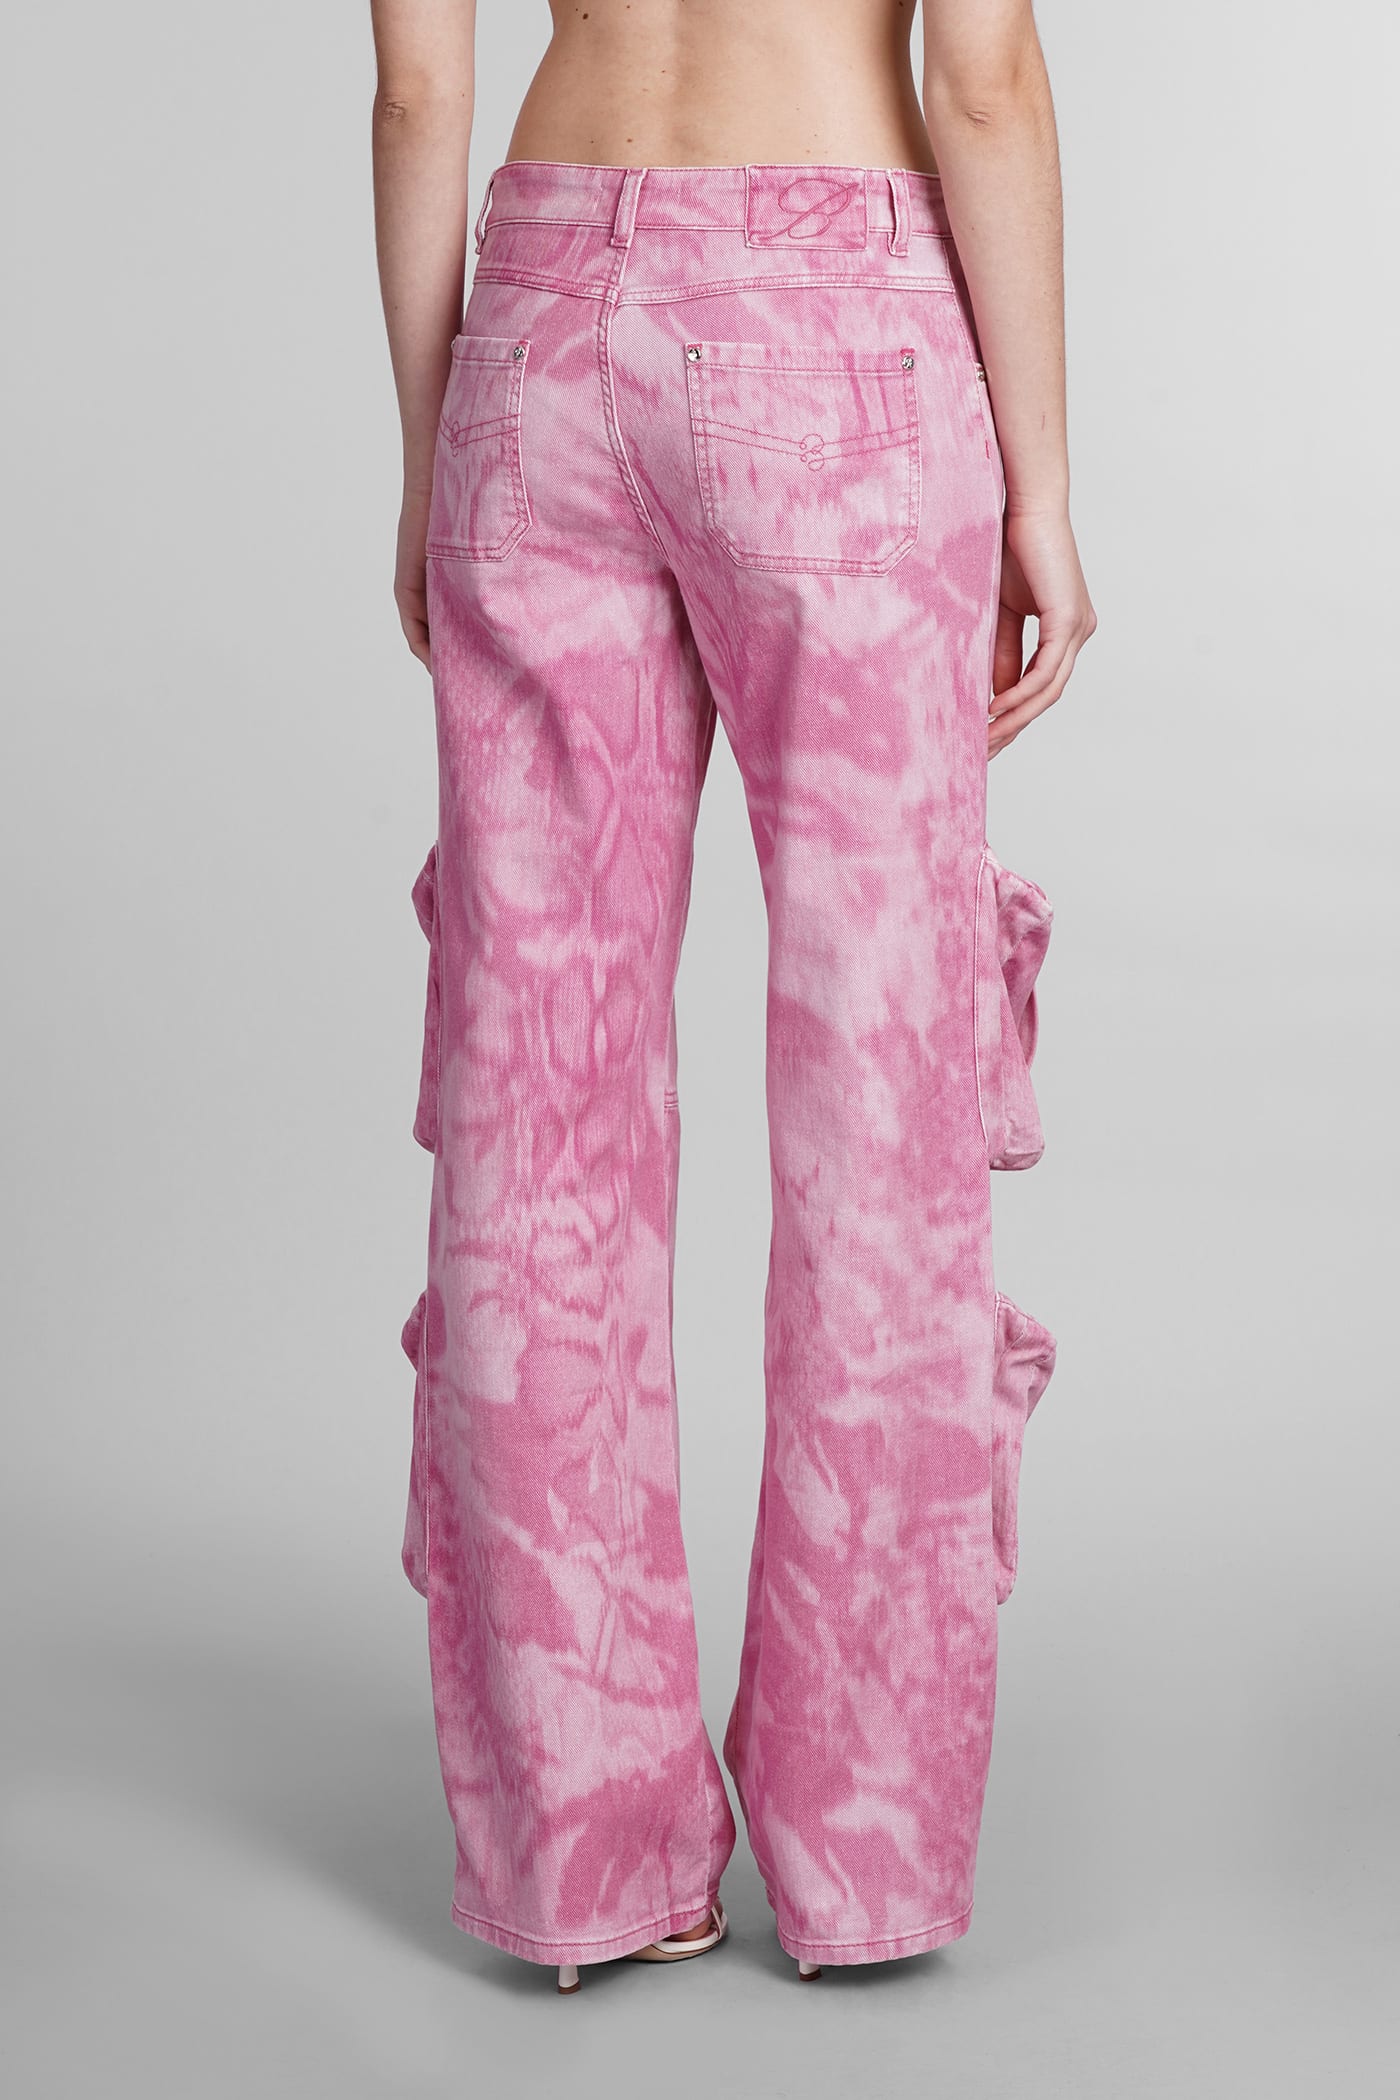 Shop Blumarine Pants In Rose-pink Cotton